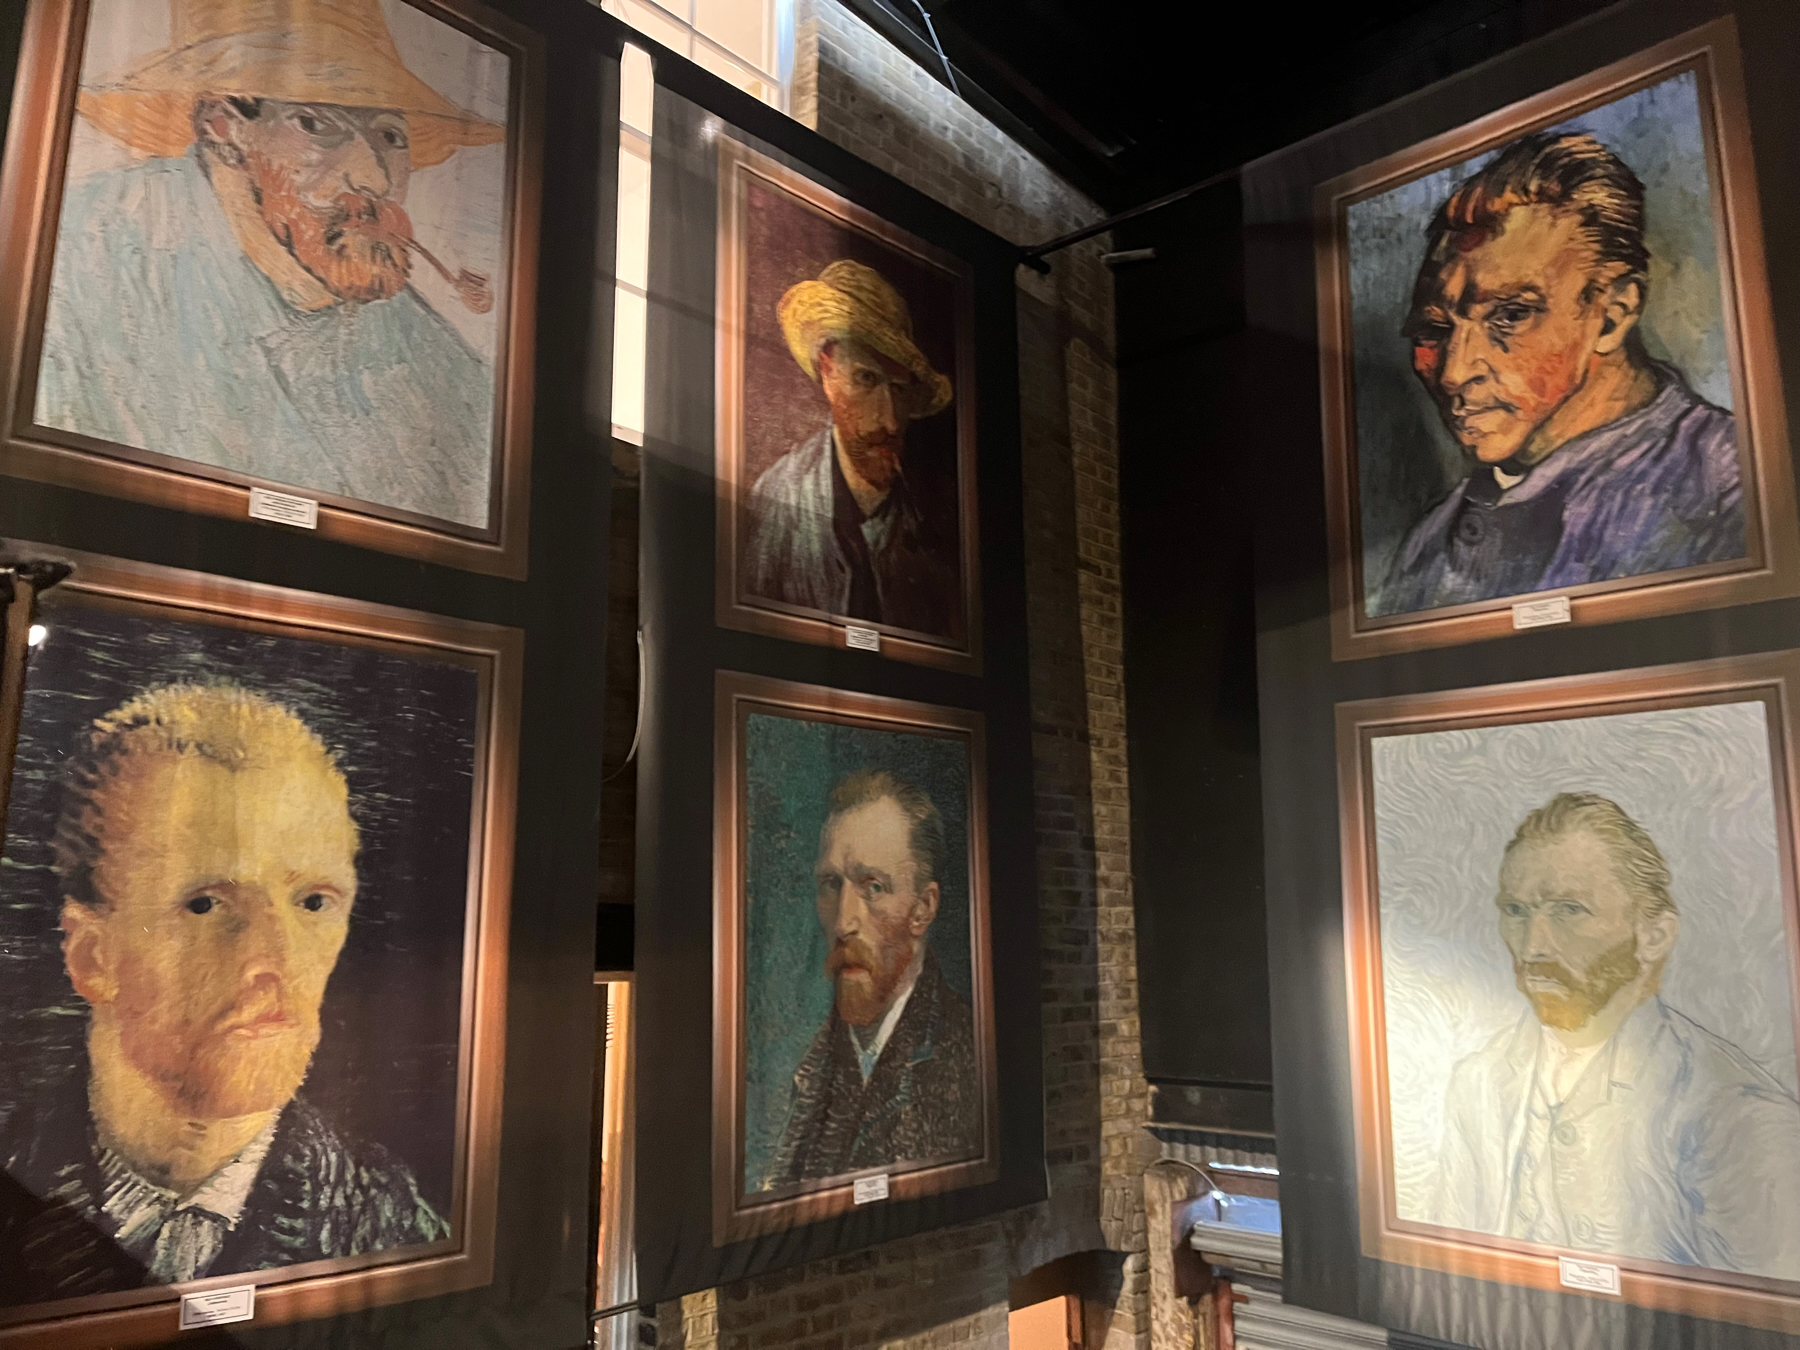 Copies of several of Van Gogh self-portraits